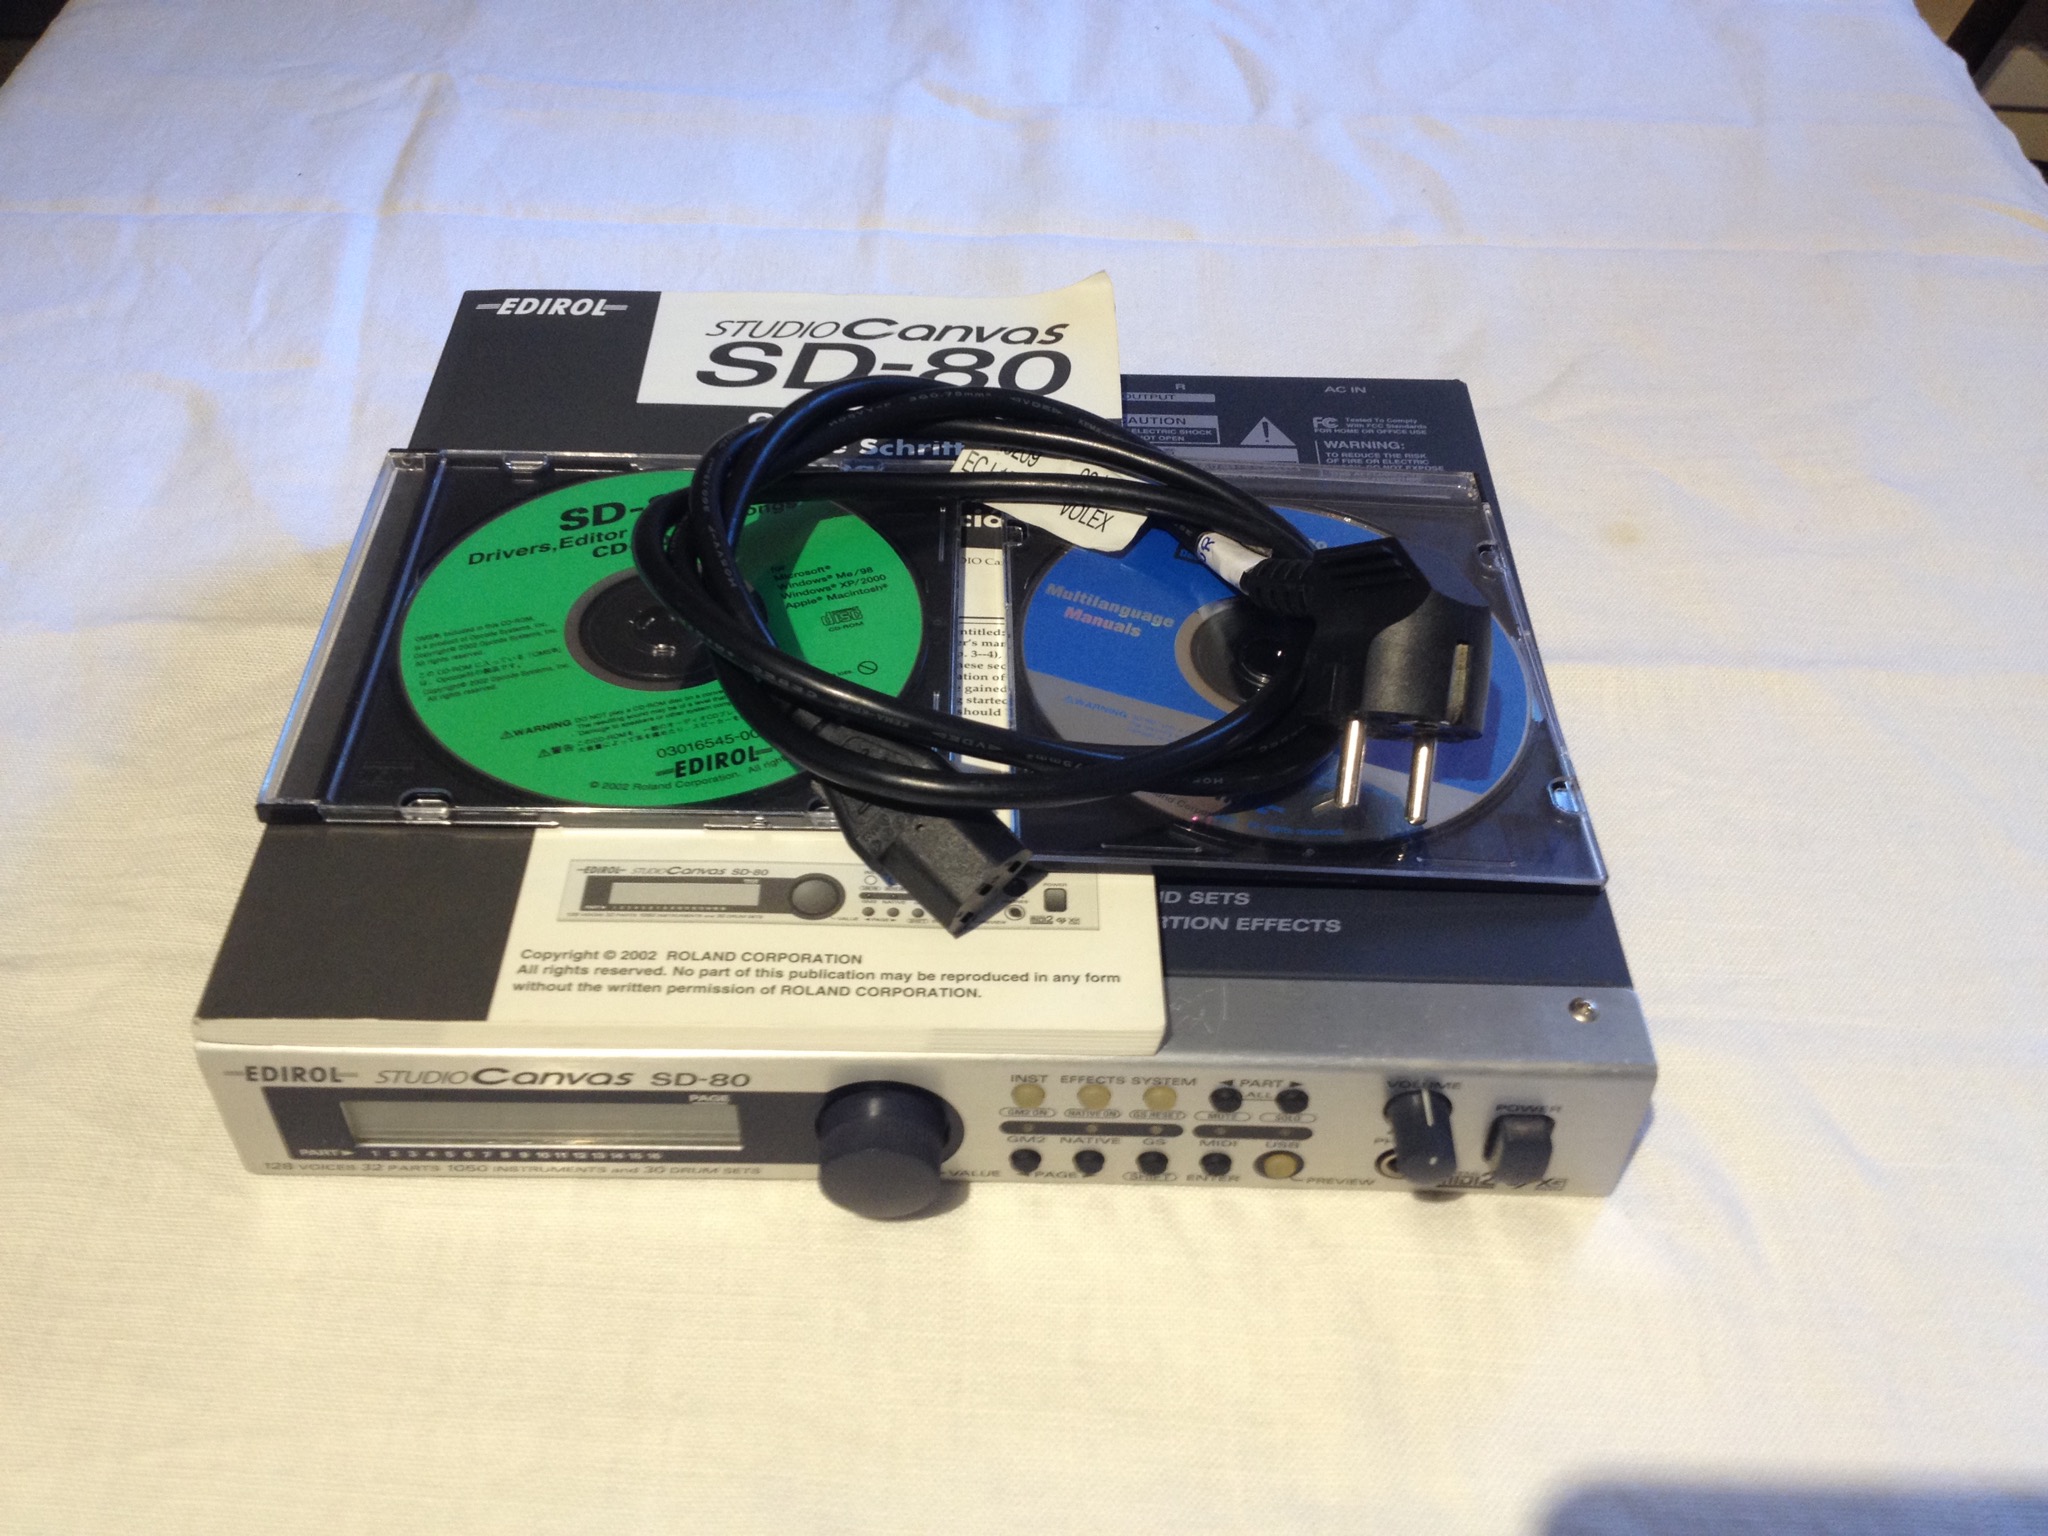 SD-80 - Edirol SD-80 - Audiofanzine